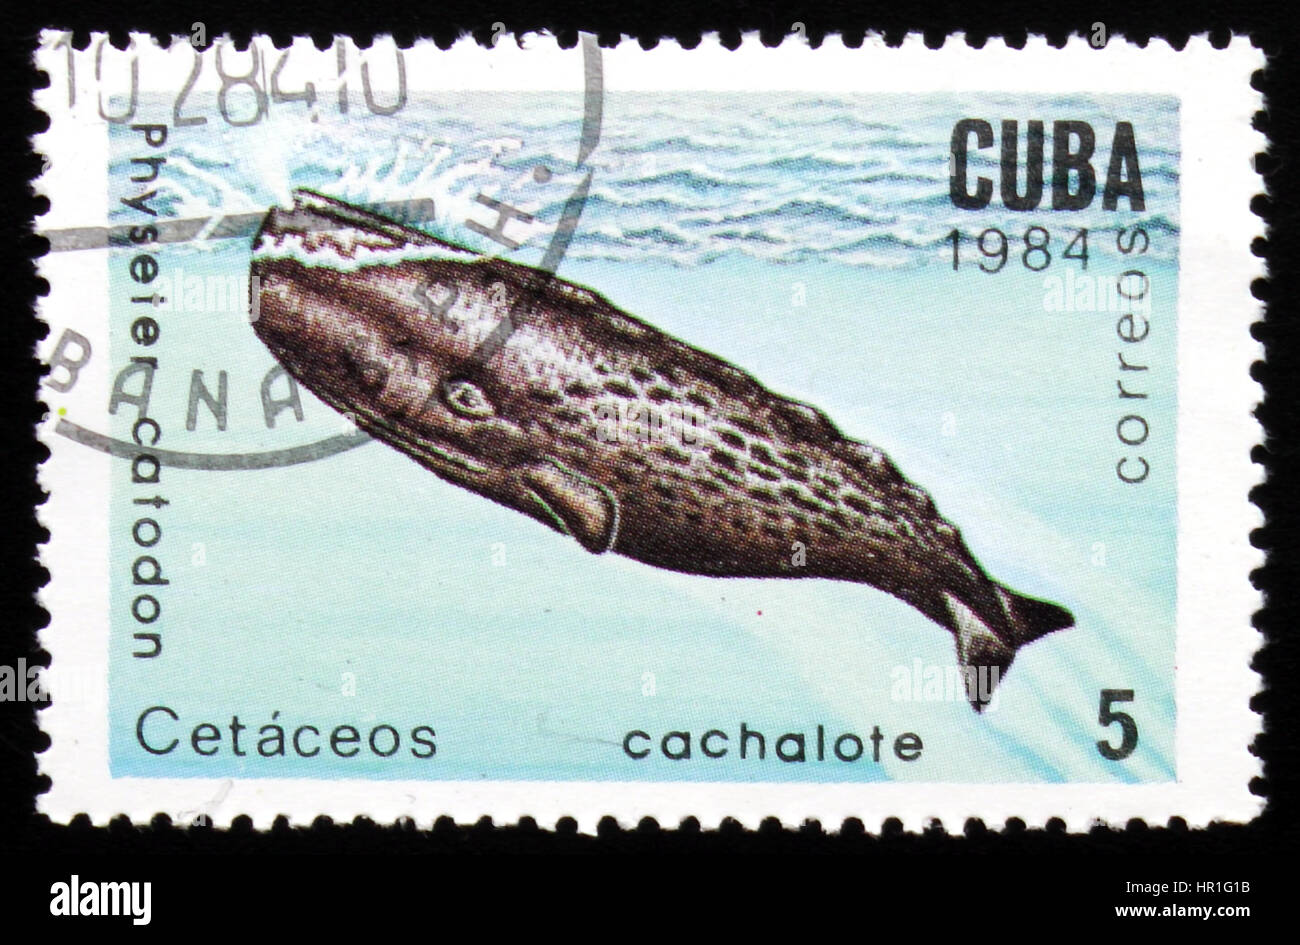 Moskau, Russland - 19. Februar 2017: Eine Briefmarke gedruckt in Kuba zeigt Wal Physeter Catodon, Serie Marine Mammal, ca. 1984 Stockfoto